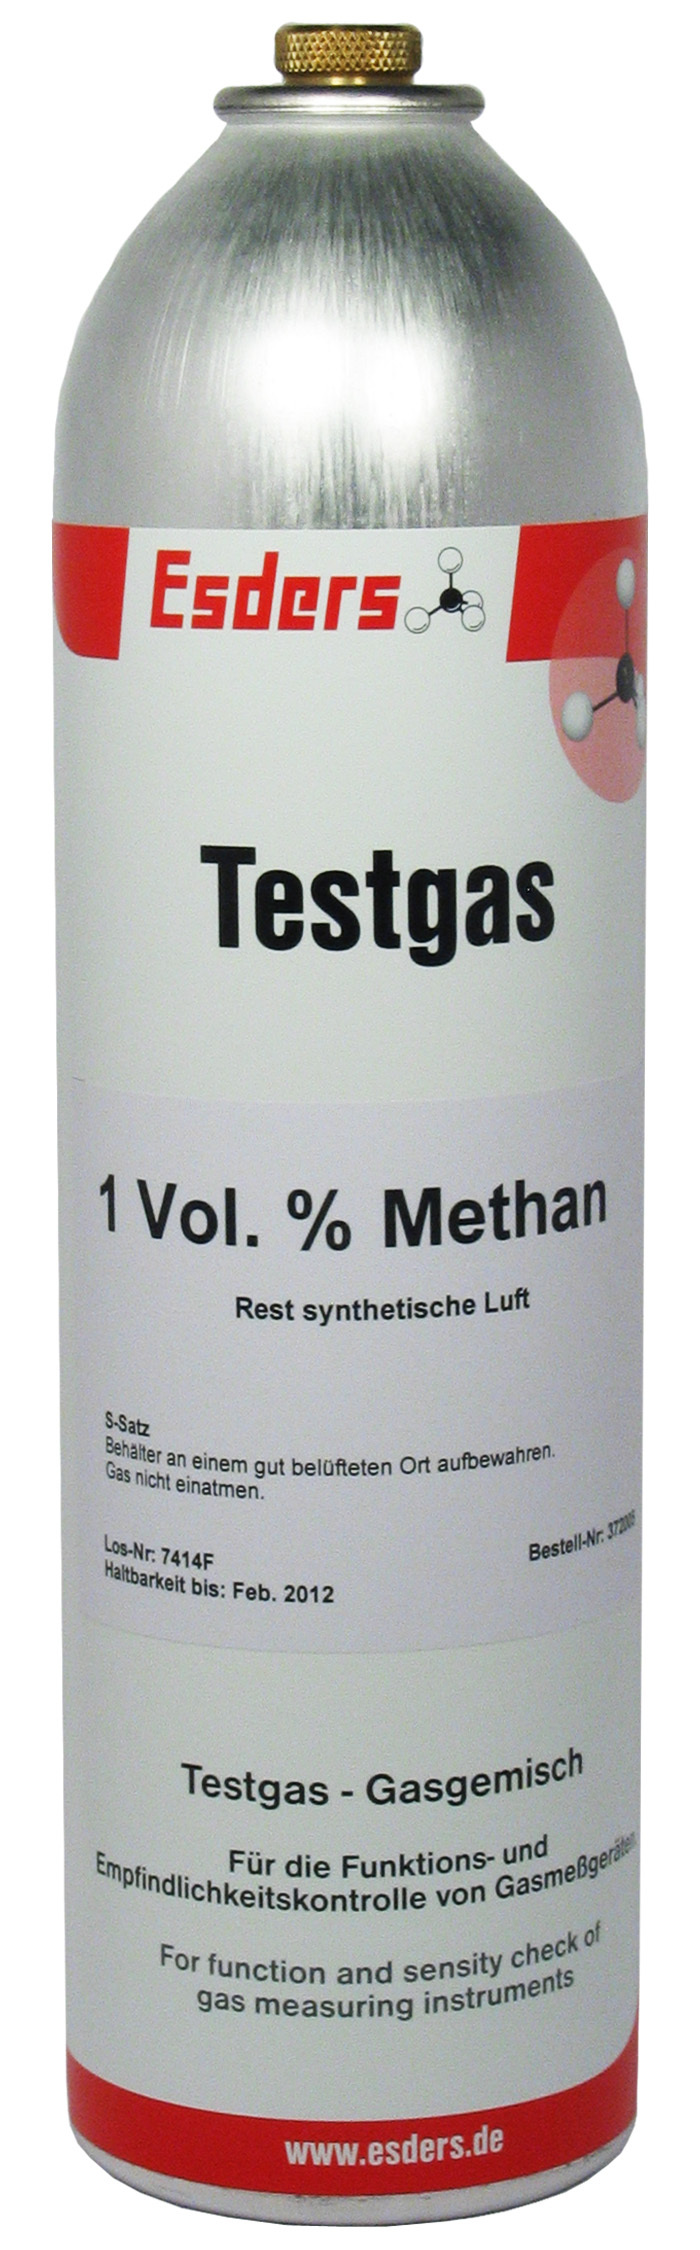 Test gas can 1 Vol.% methane 1 l - 12 bar